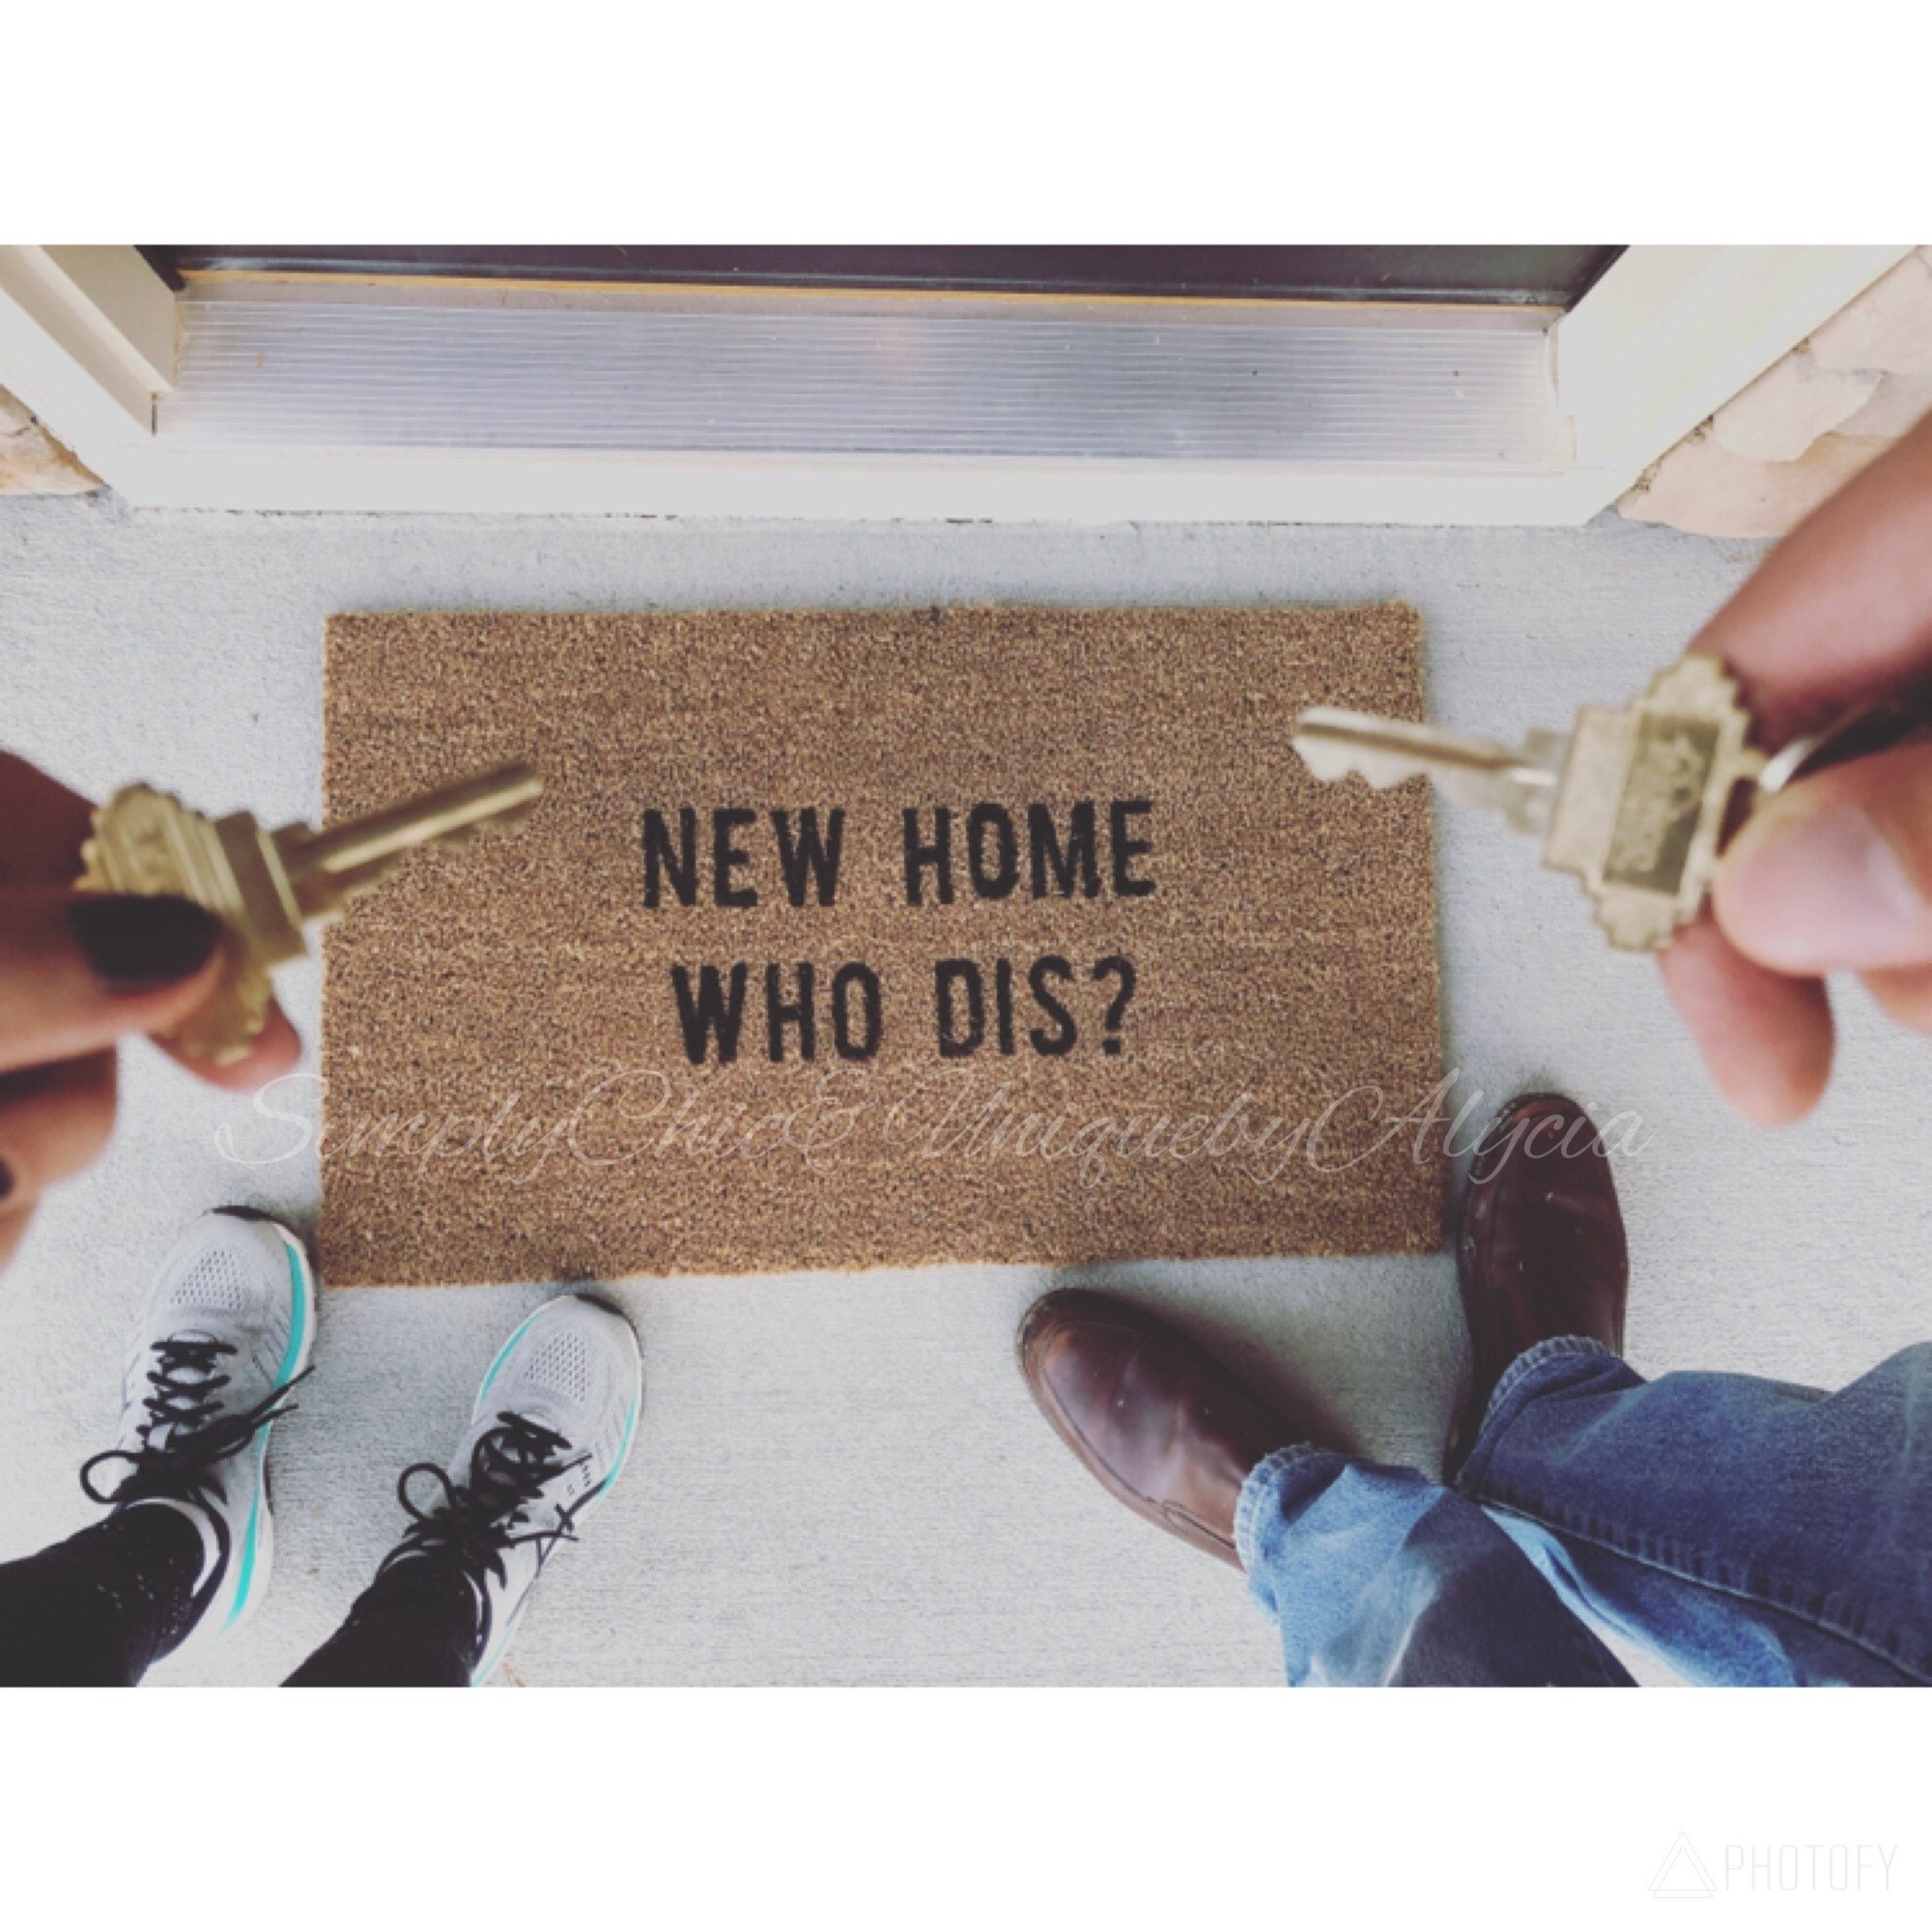 Download New home who dis doormat hand painted welcome front door